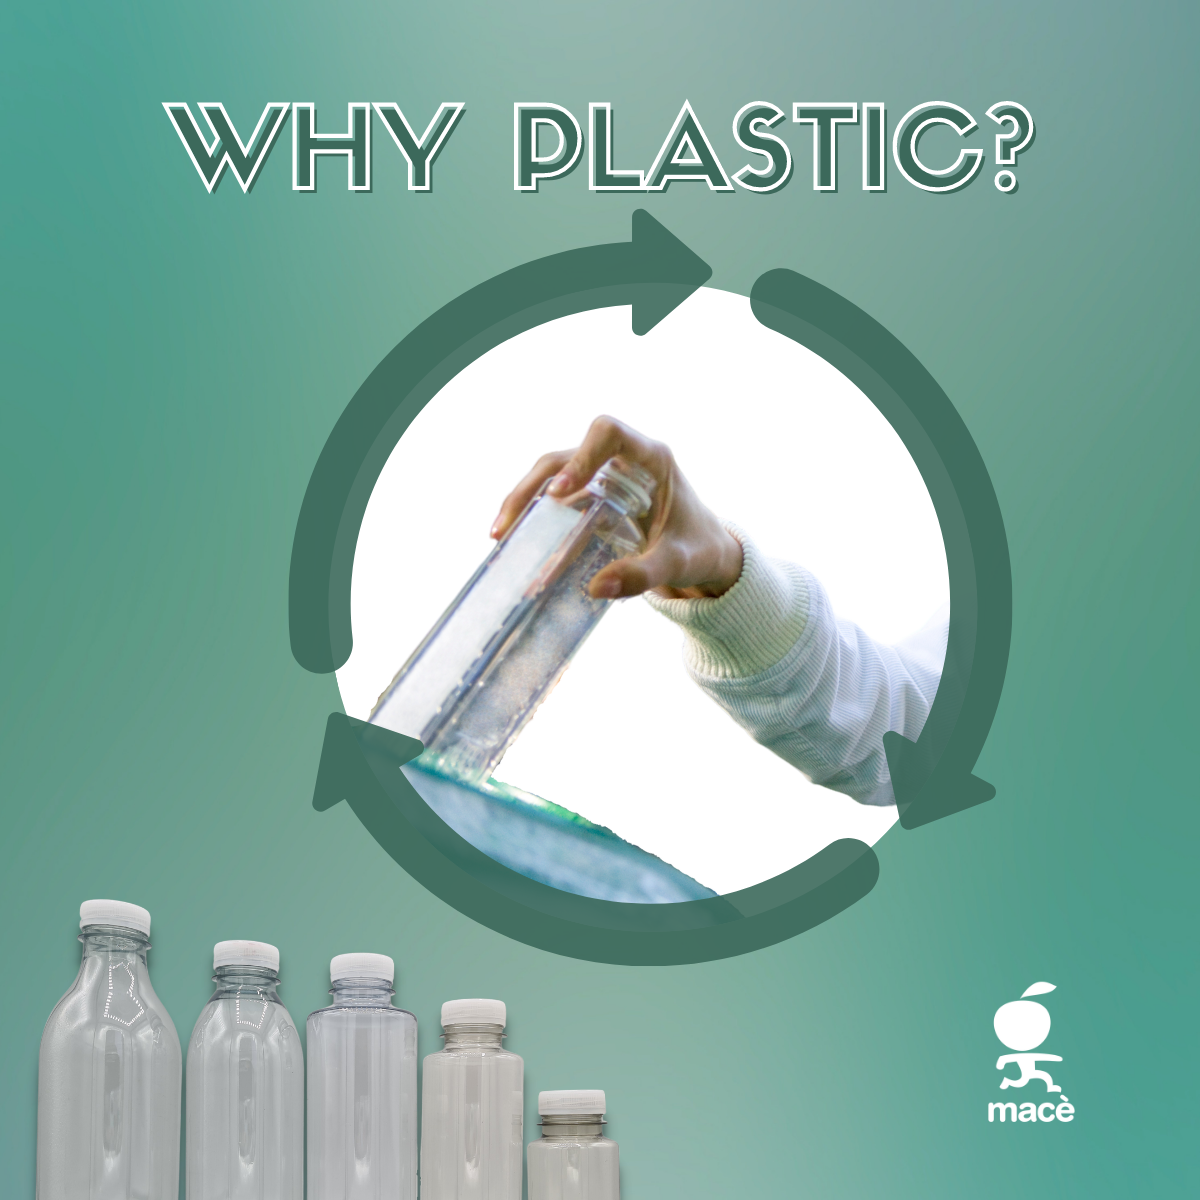 Perch usiamo le bottiglie di plastica?